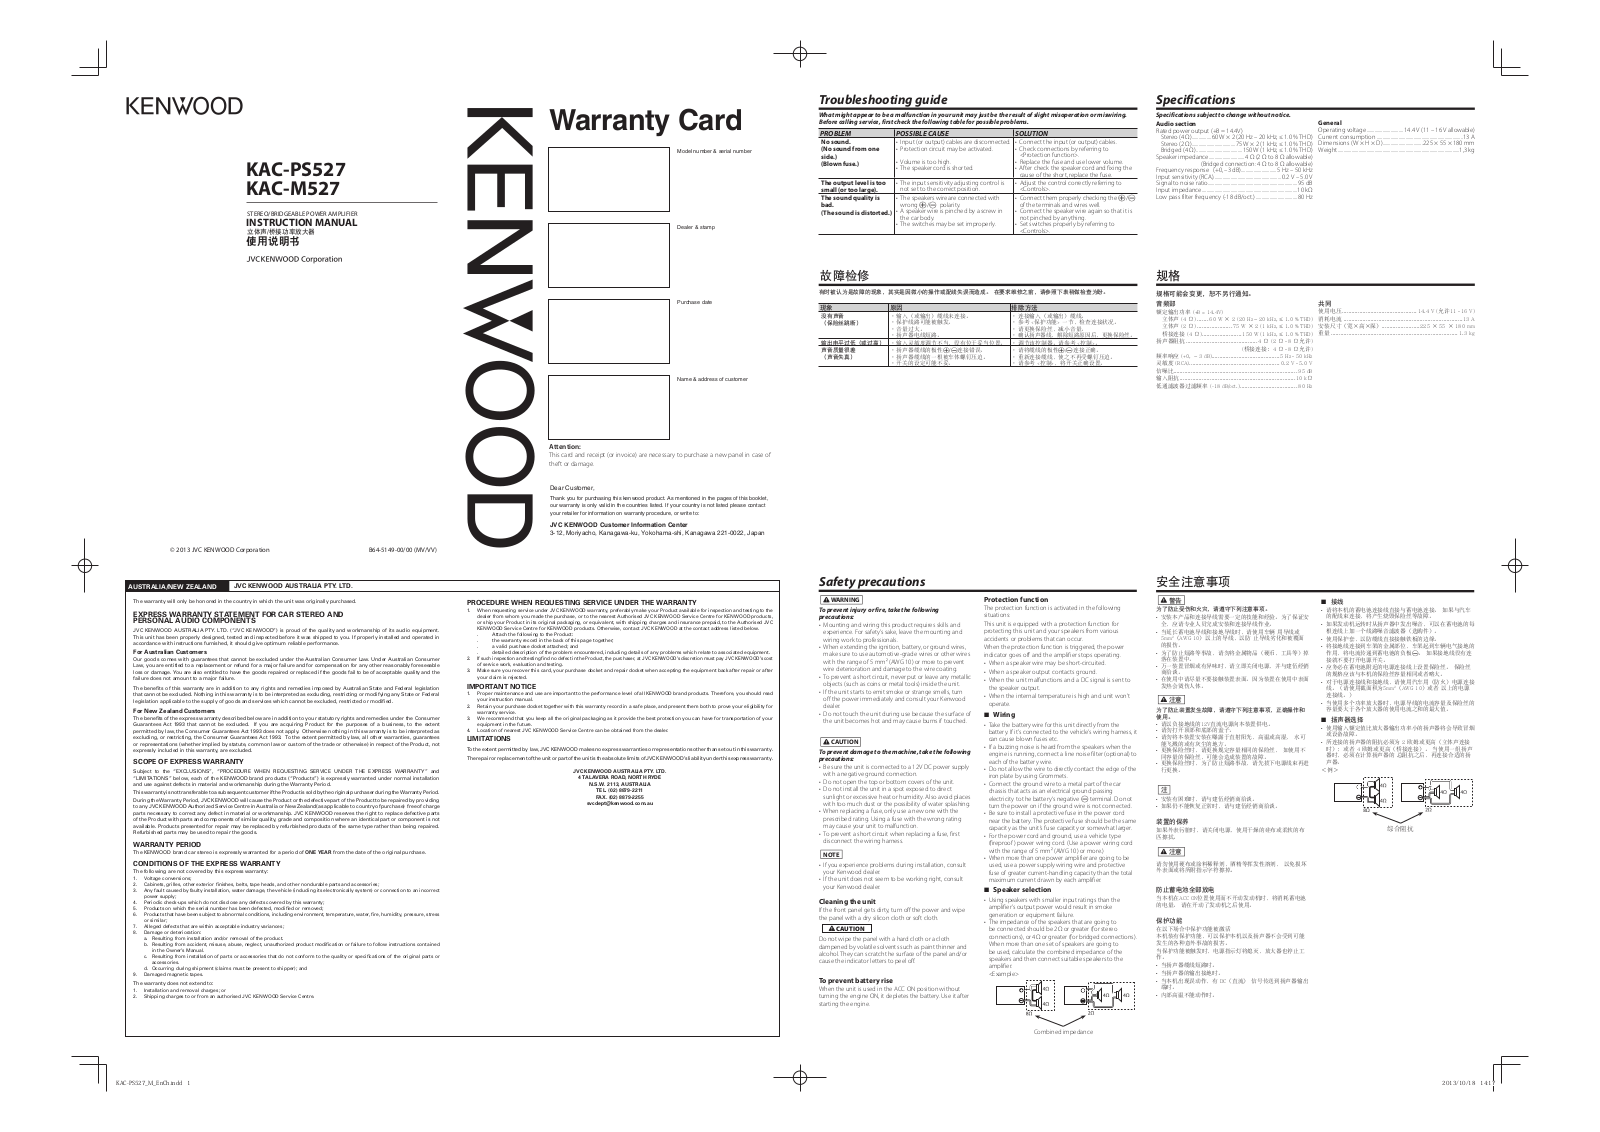 Kenwood KAC-PS527, KAC-M527 Manual